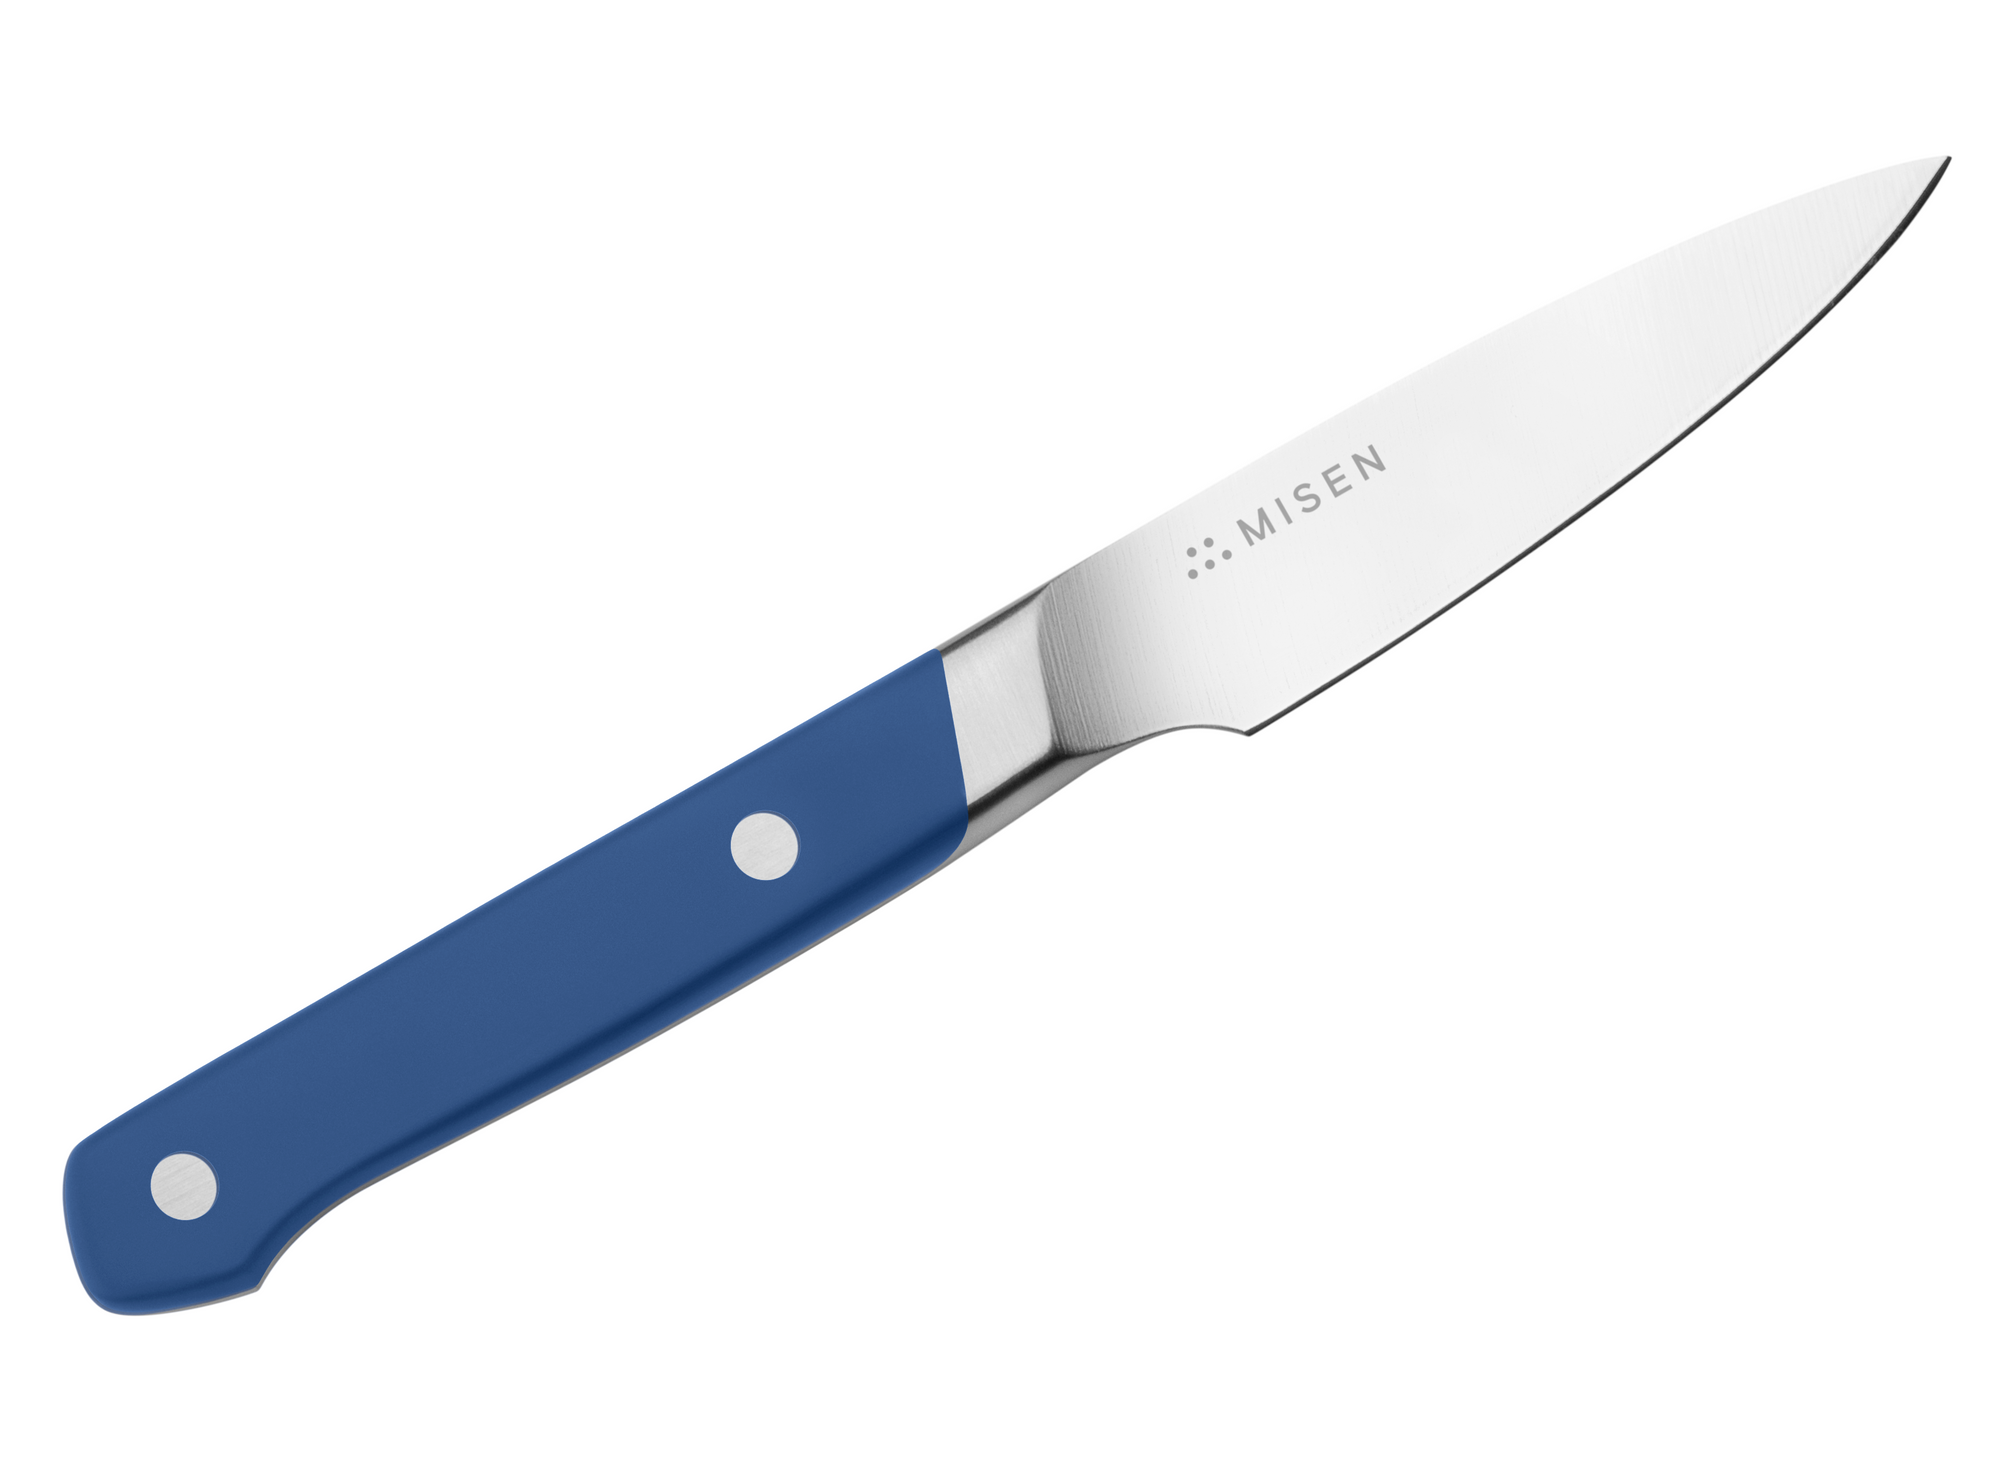 Misen Paring Knife in blue